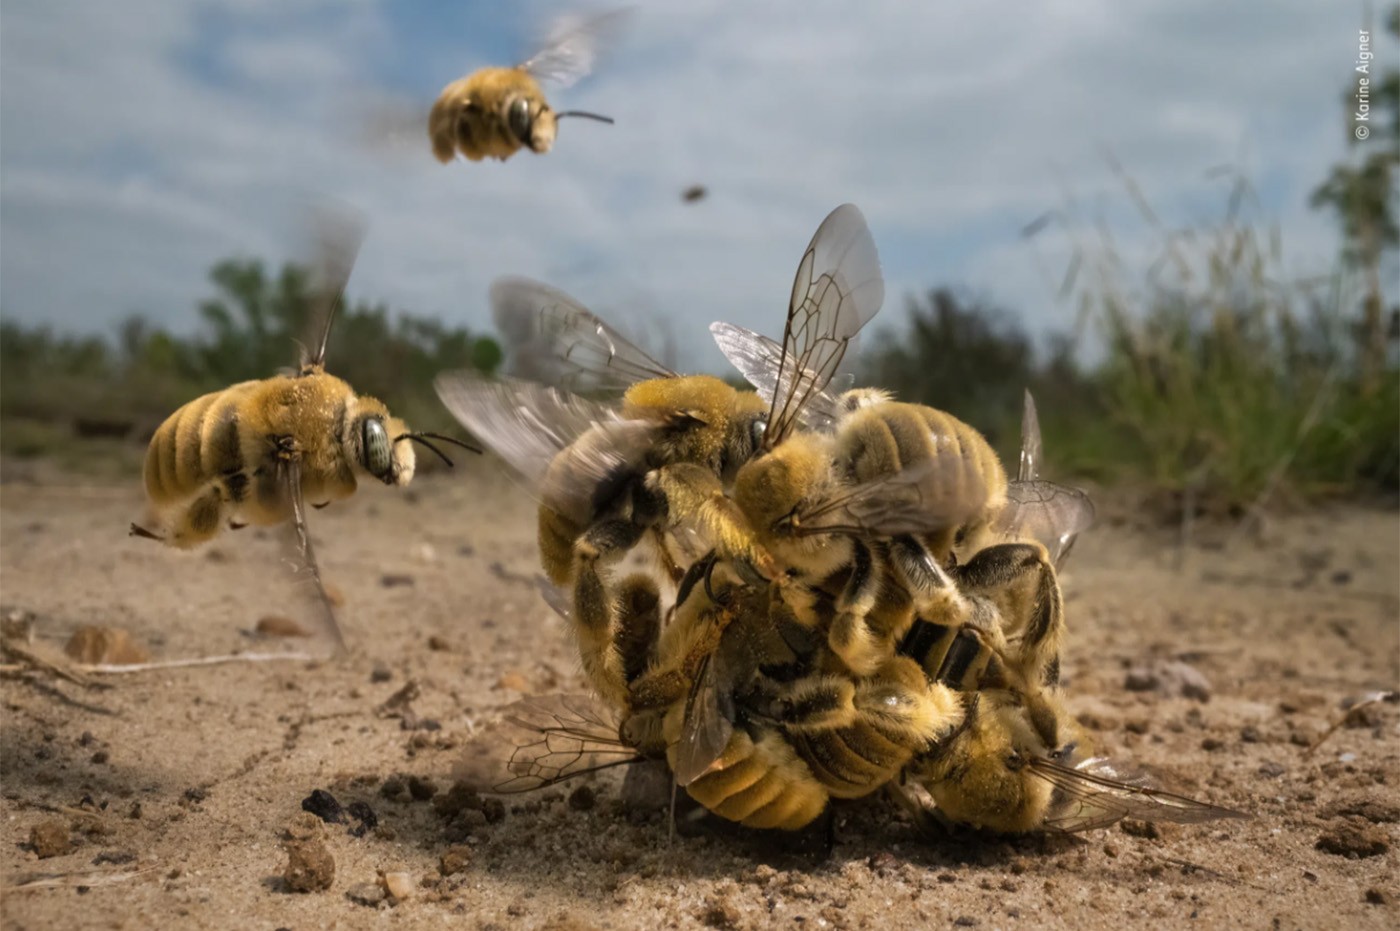 Fotografia de vida selvagem: foto de bololô de abelhas vence concurso internacional